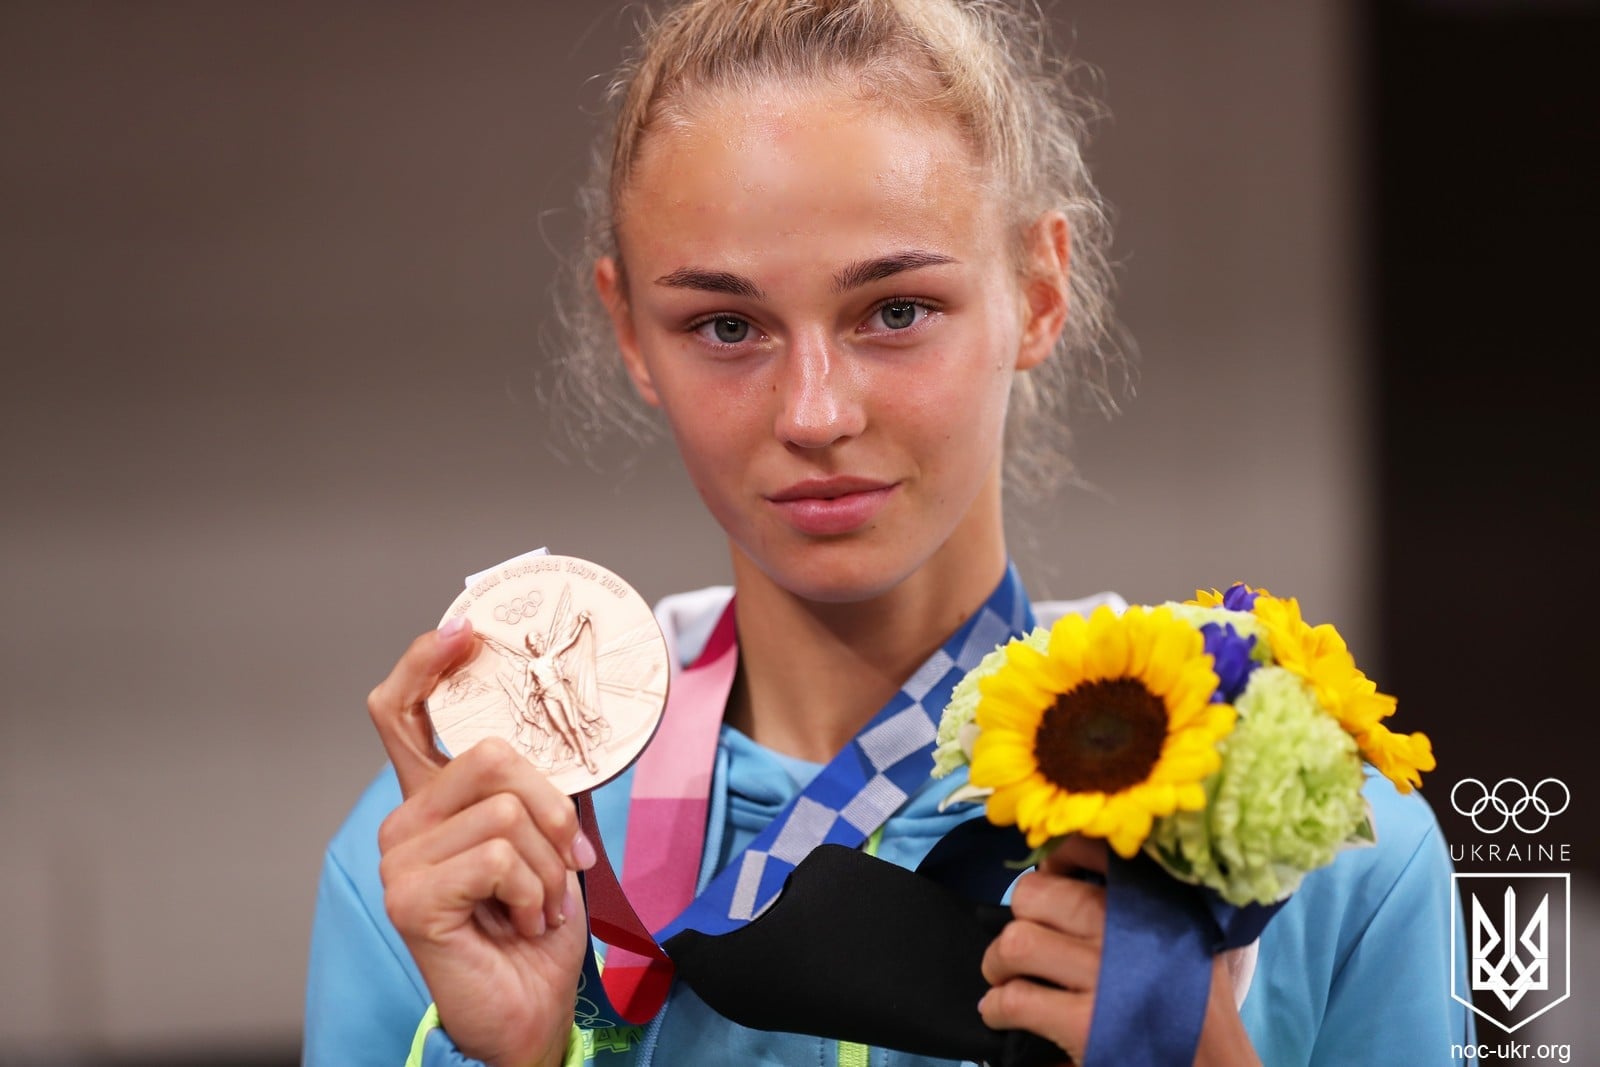 Посты на английском и семейные фото. Как выглядят Инстаграм-профили Олимпийских медалистов Украины (фото)